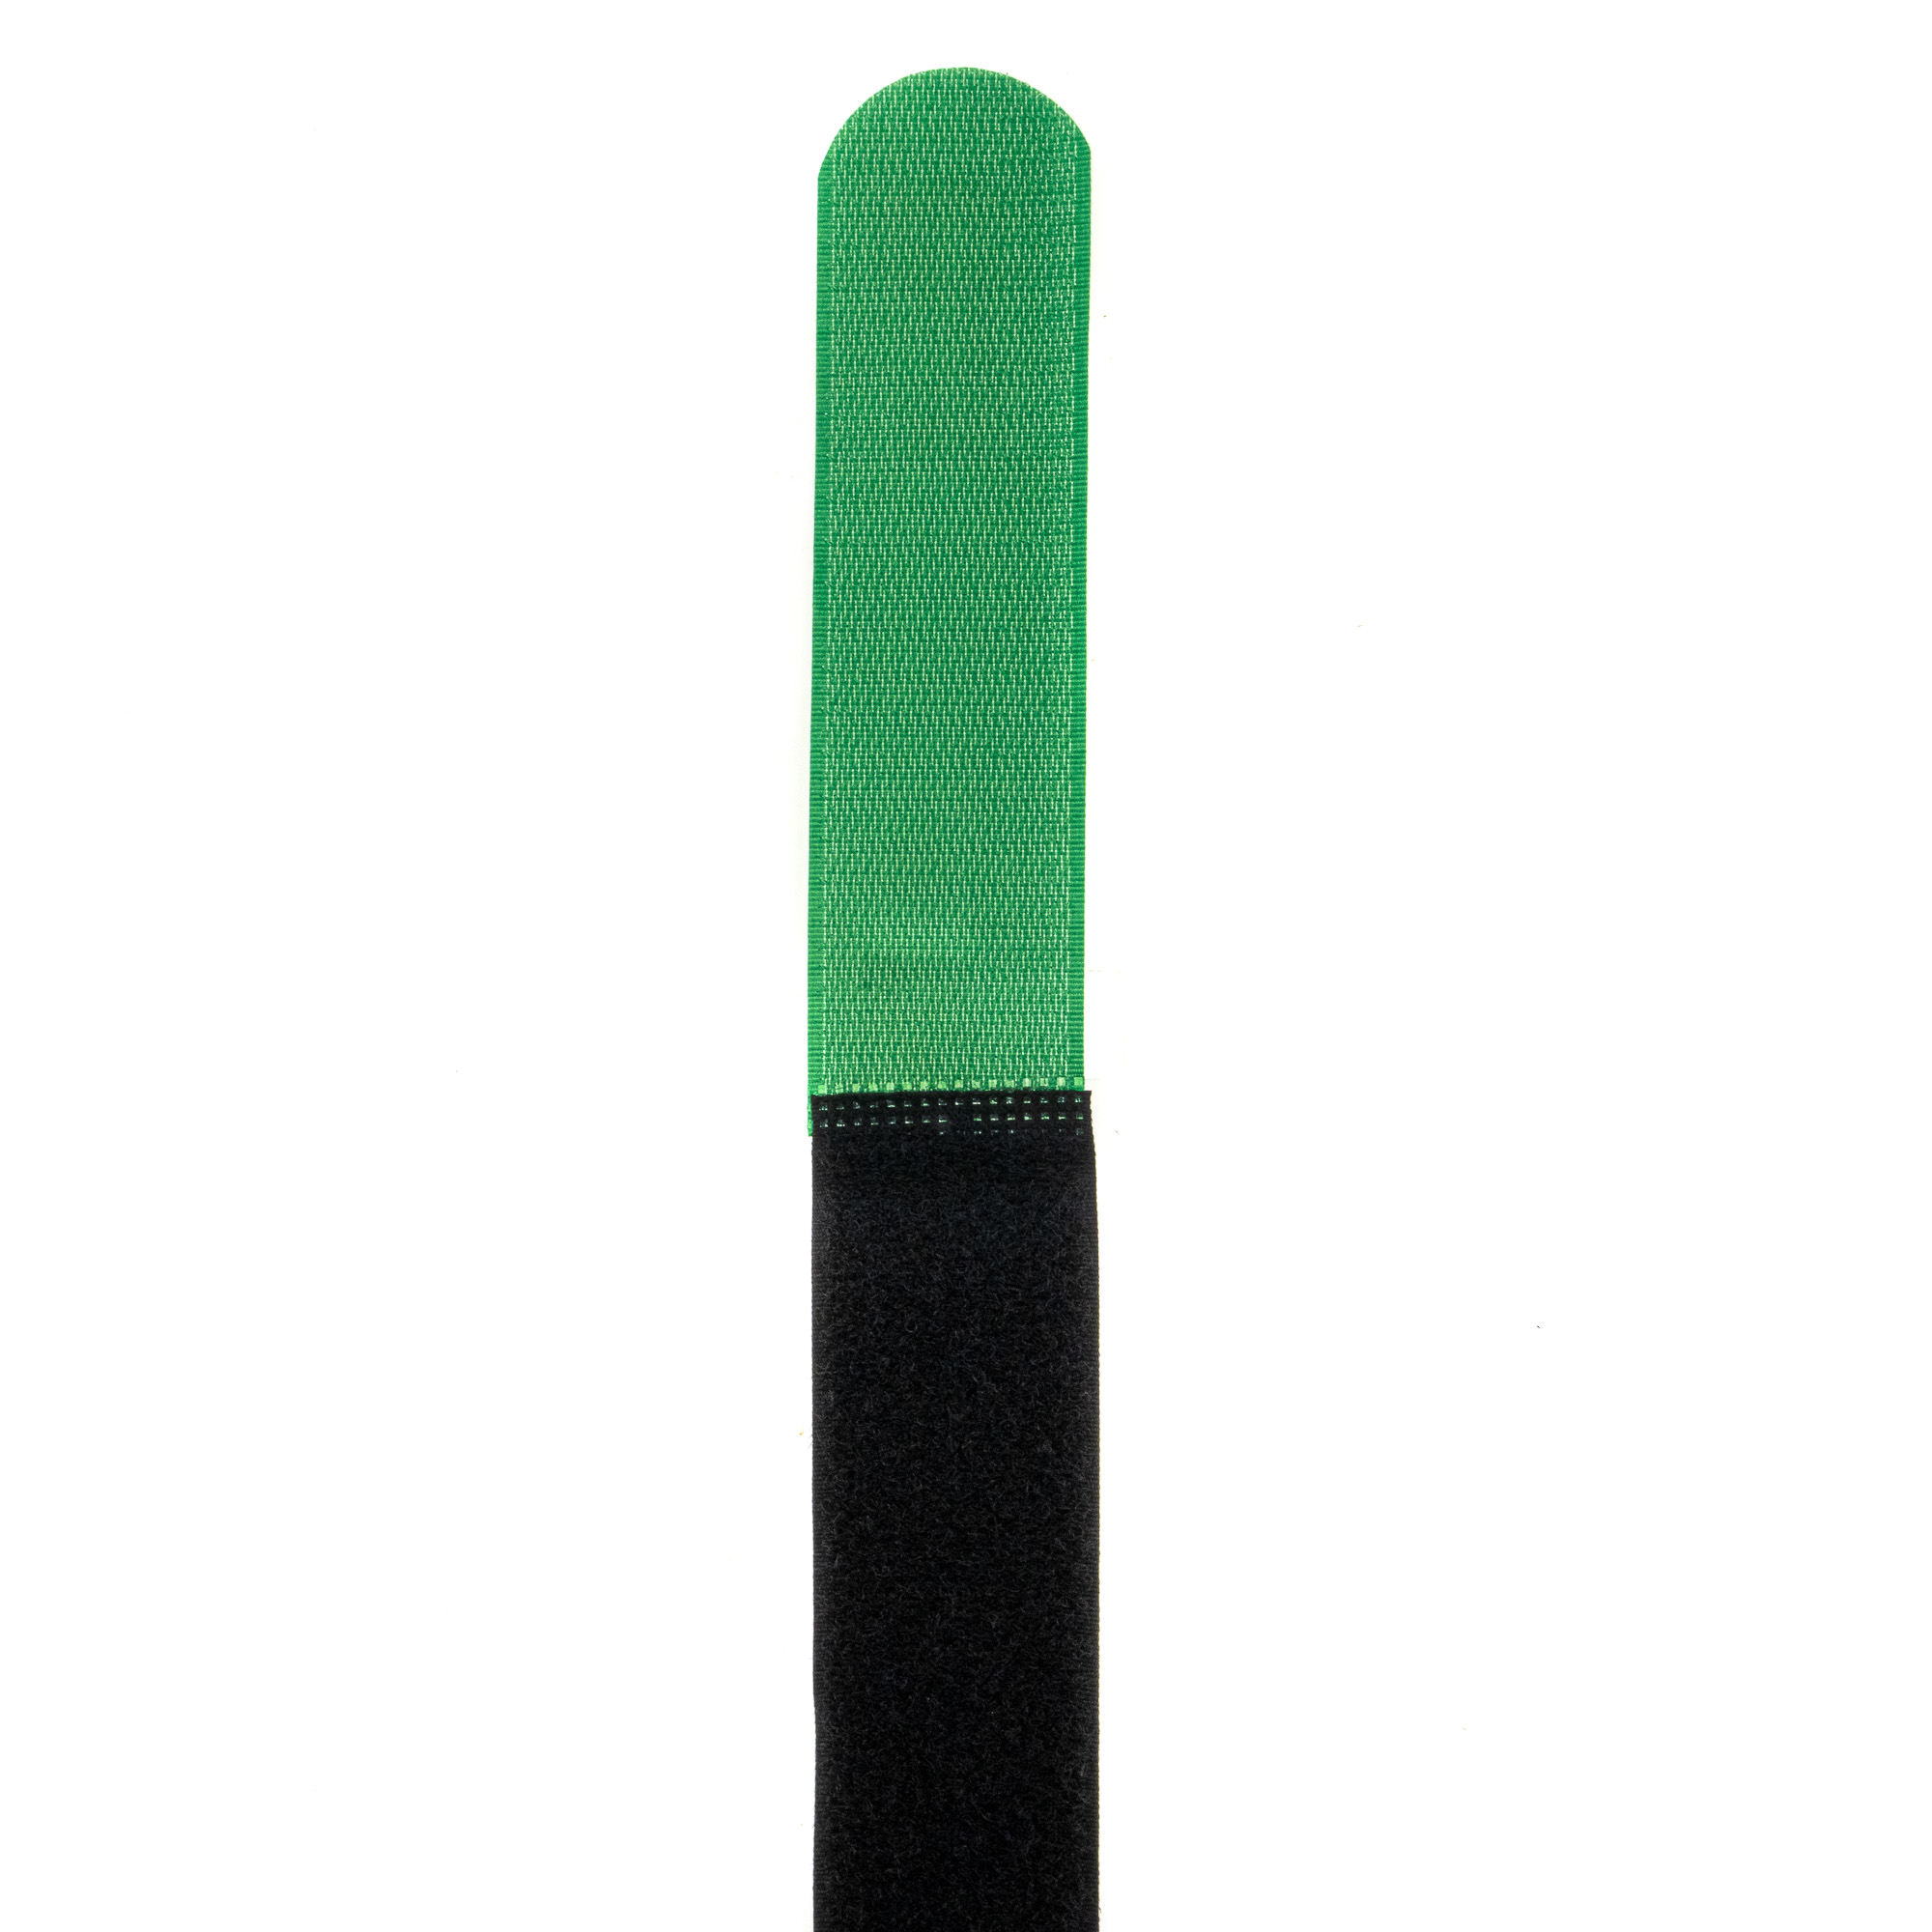 Klettbinder 800x38, schwarz/grün, 10Stk.